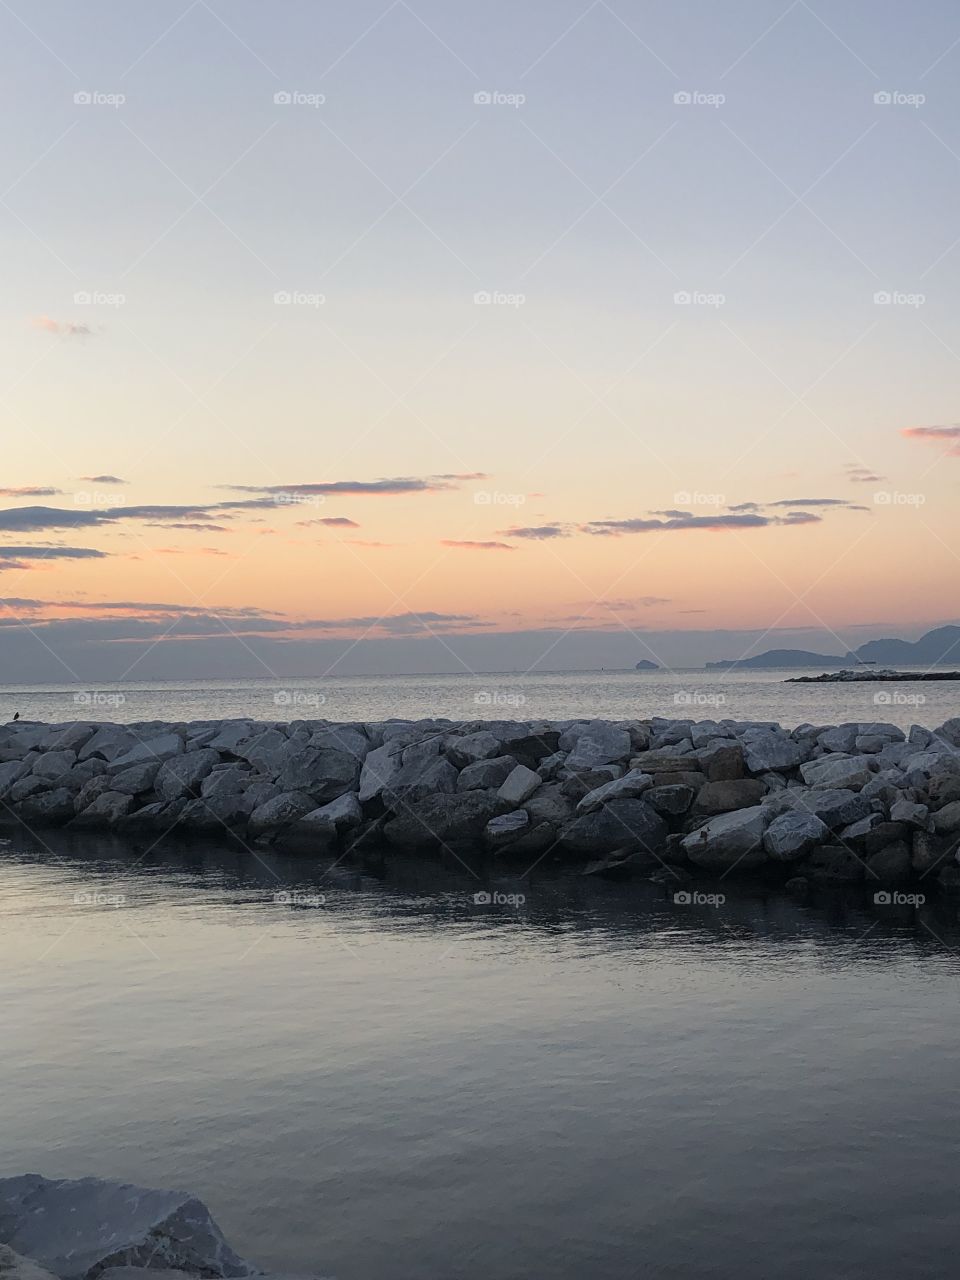 Marina di Massa al tramonto. 